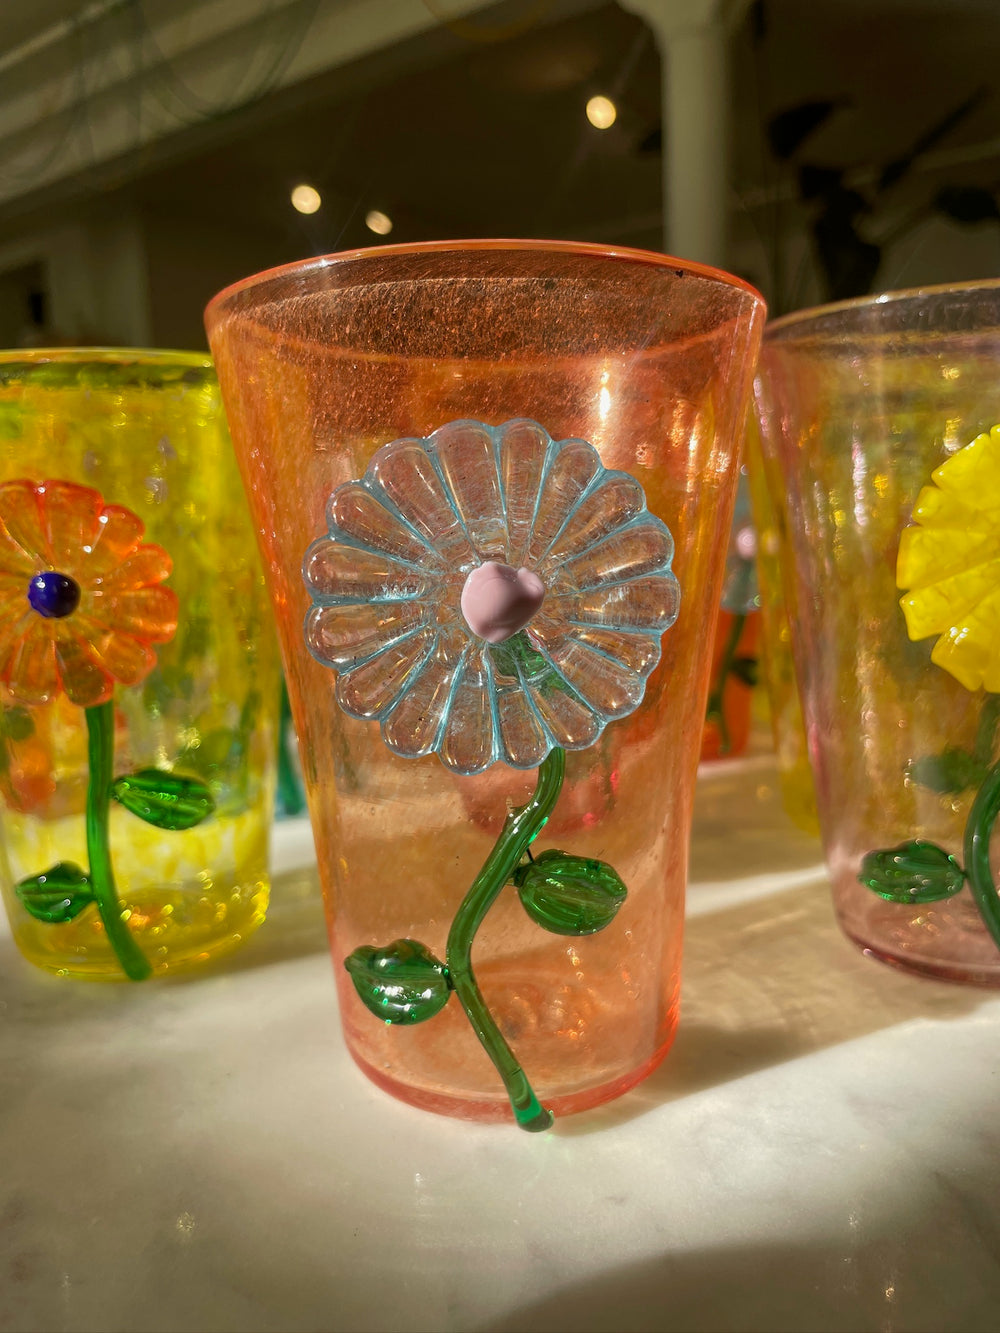 Flora Glass